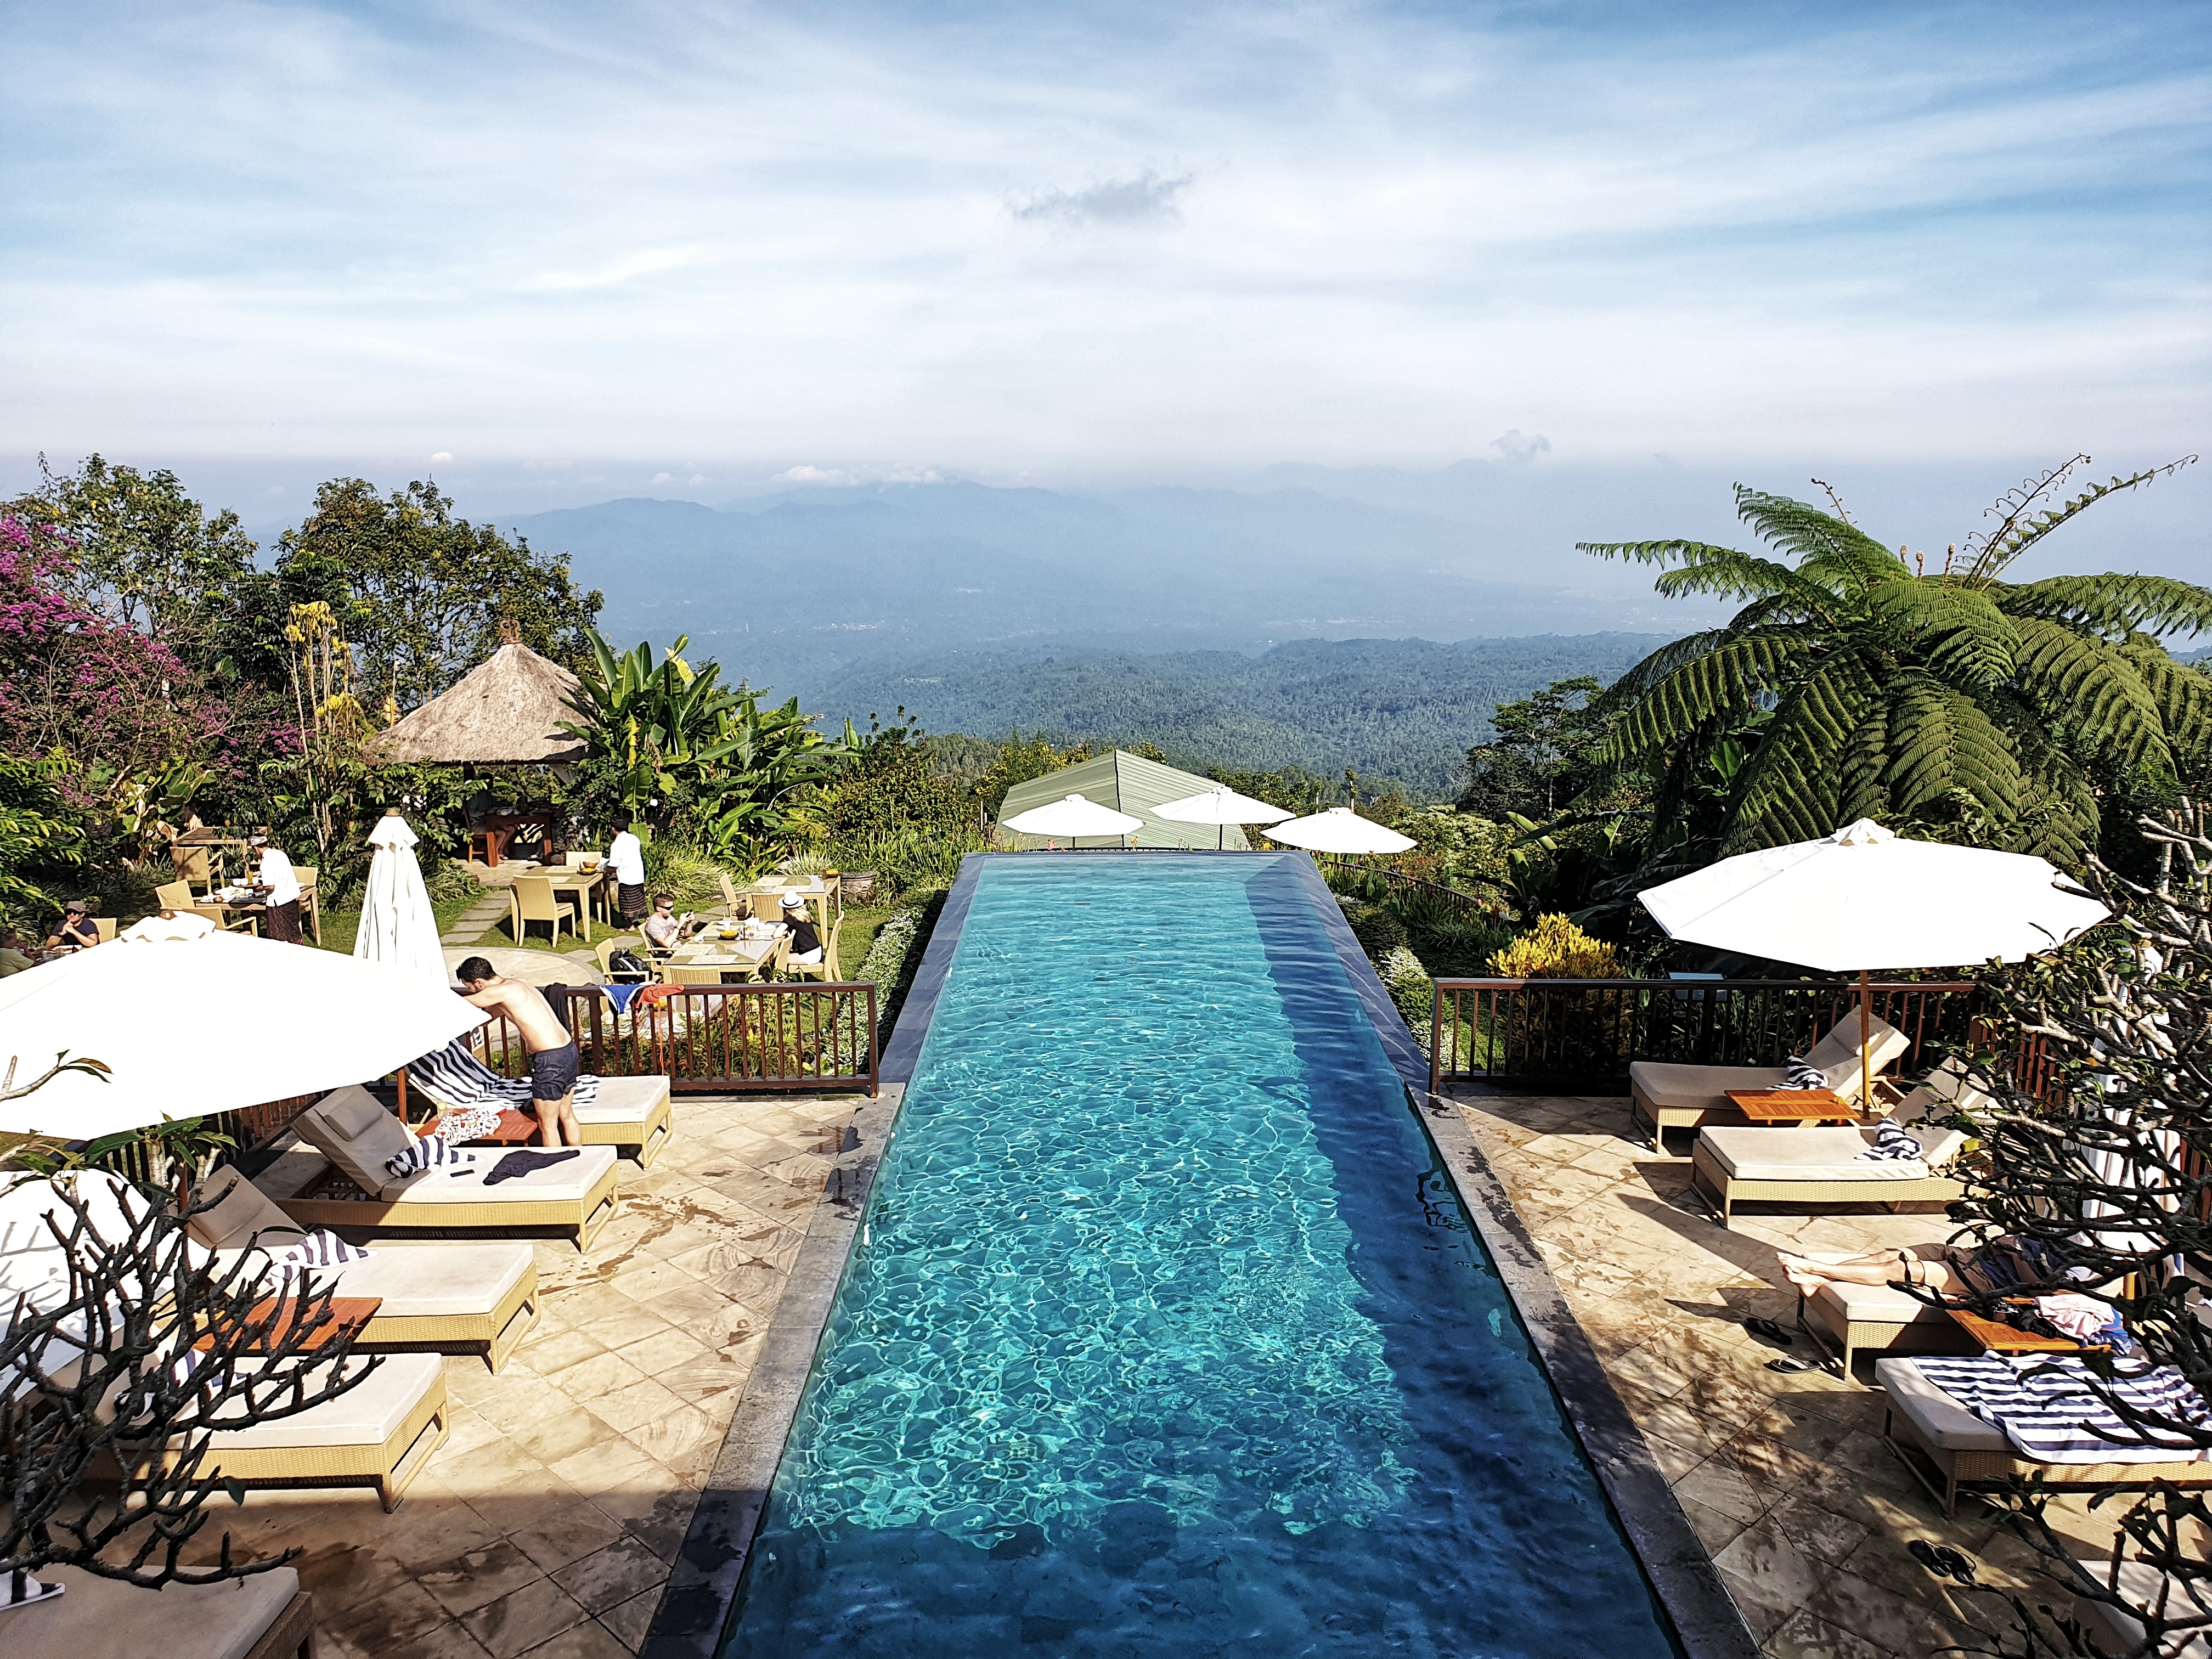 Infinity Pool, Munduk Moding Plantation, Munduk, Bali, Indonesia